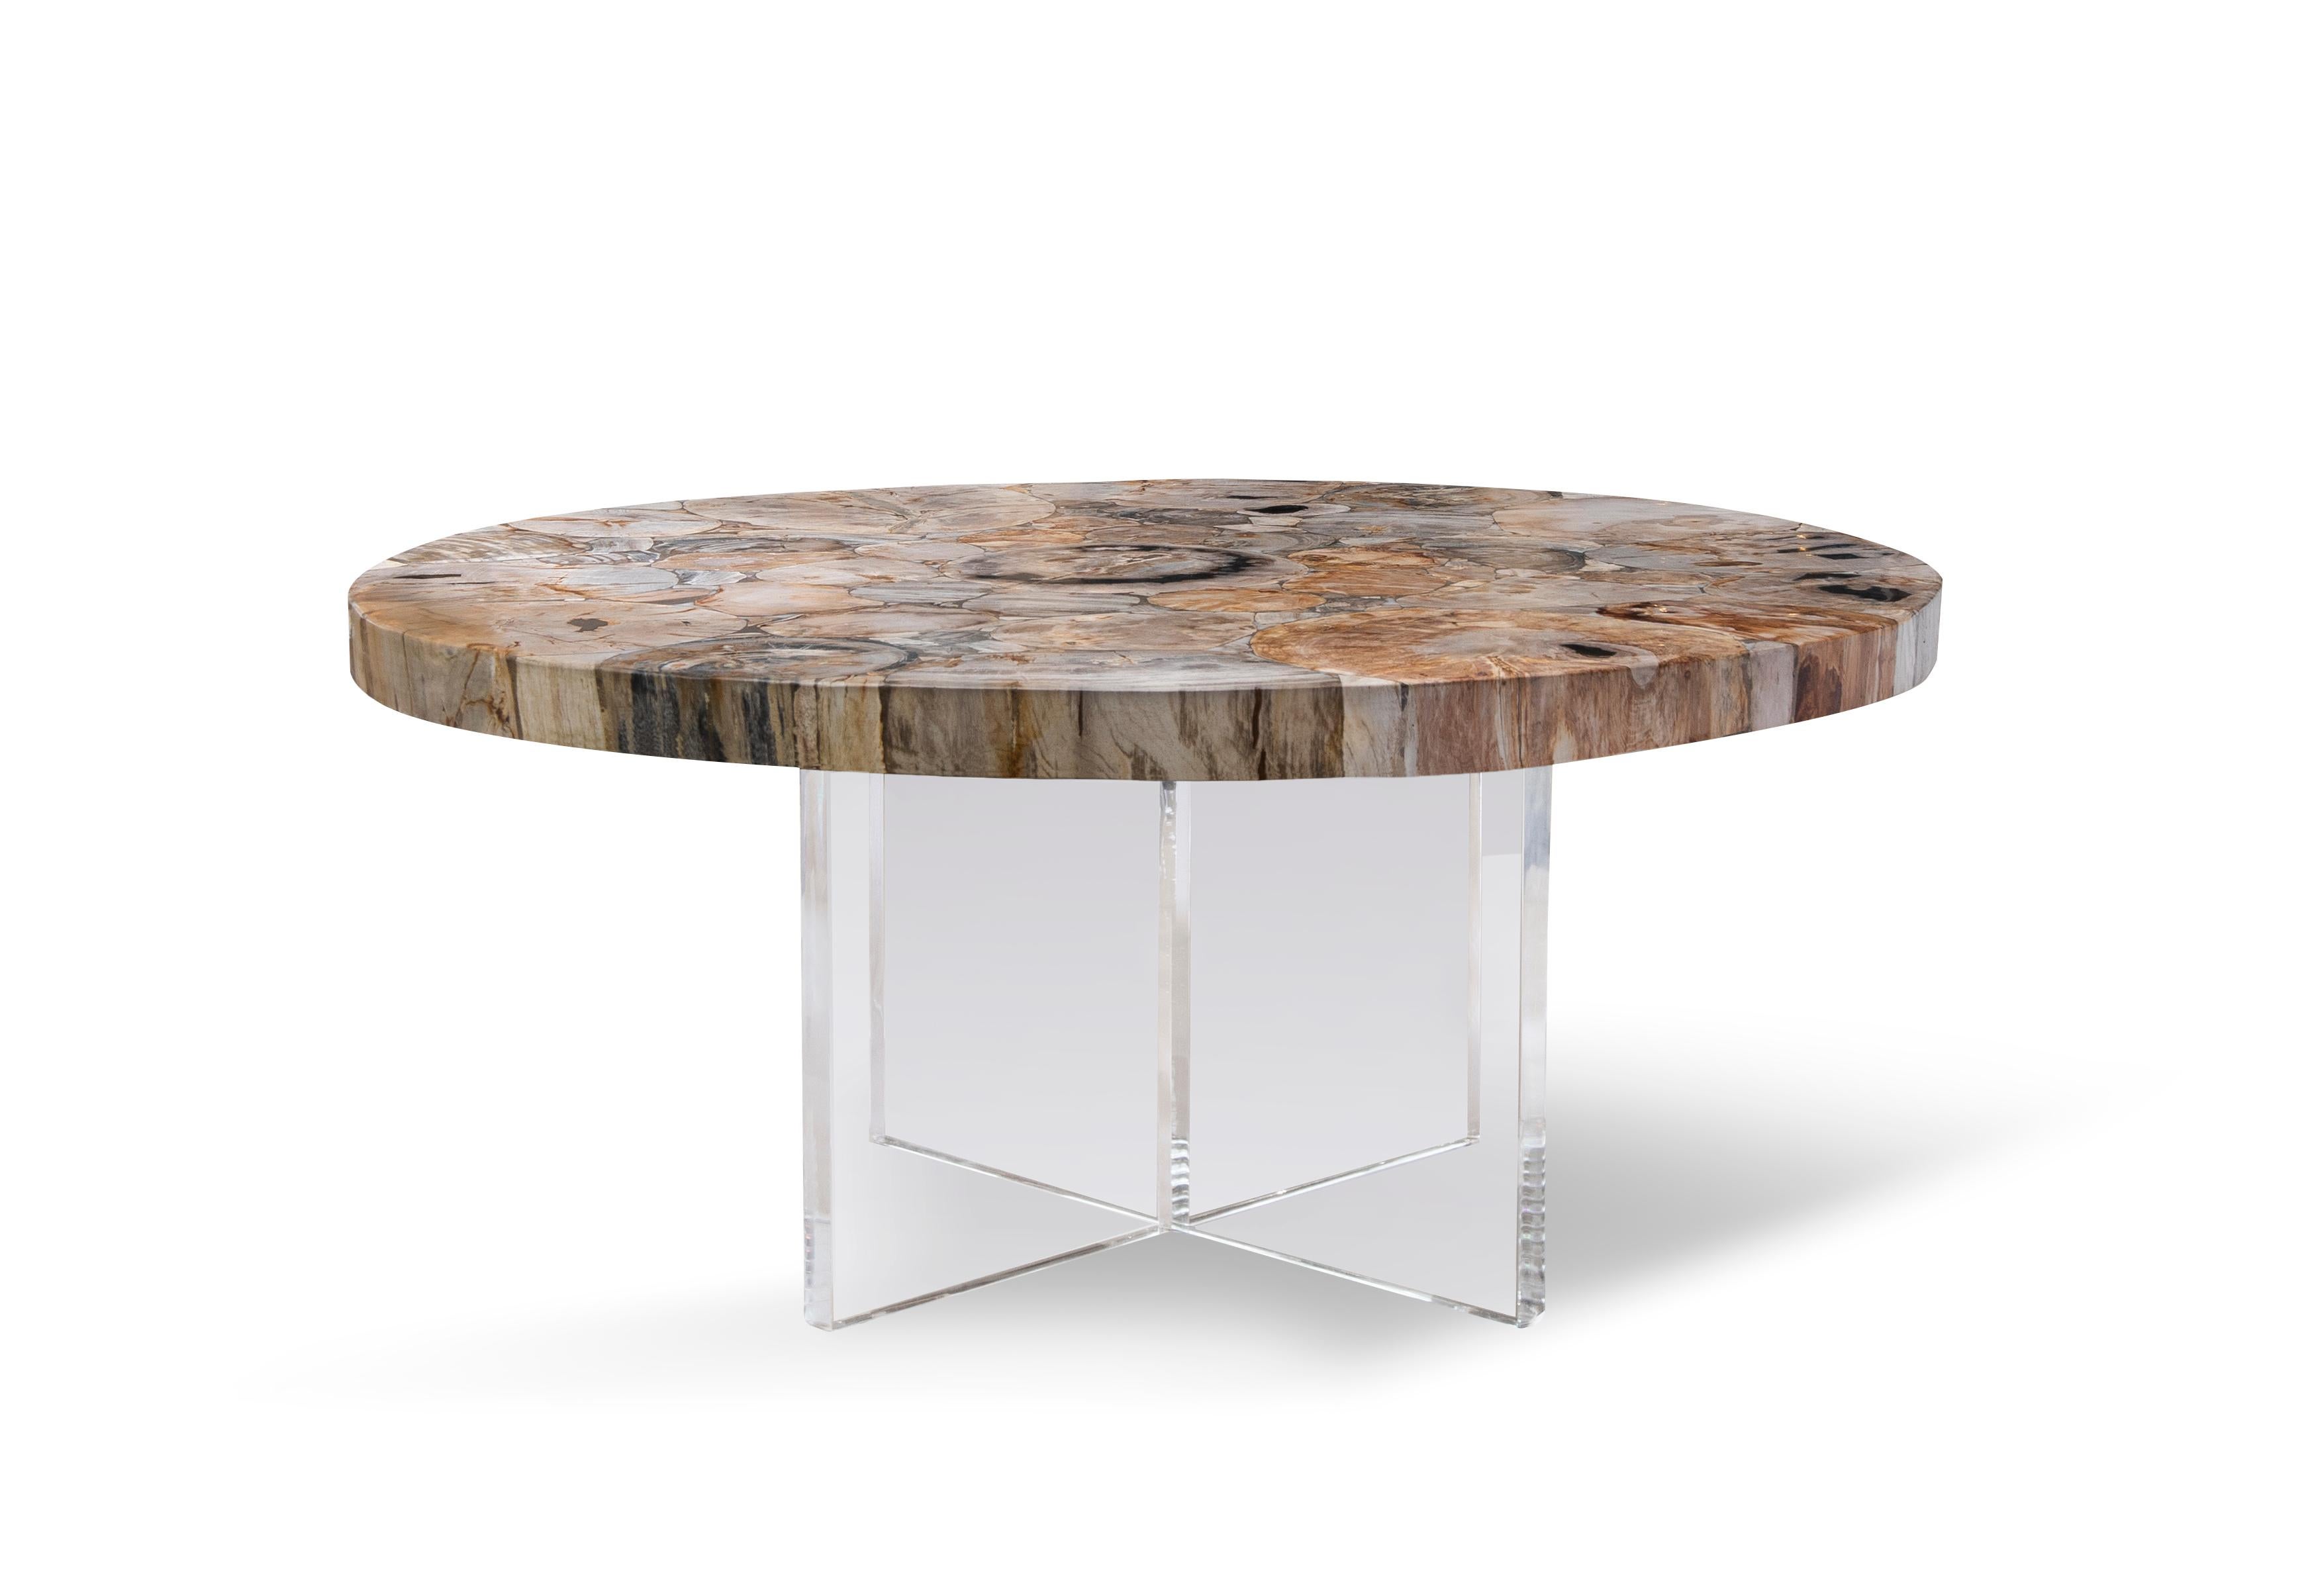 Petra est une table basse en bois pétrifié flottant sur une base en acrylique blanc.

Dans la mythologie grecque, Méduse pouvait transformer celui qui la regardait en pierre d'un simple regard. Pour le bois, ce processus prend des millions